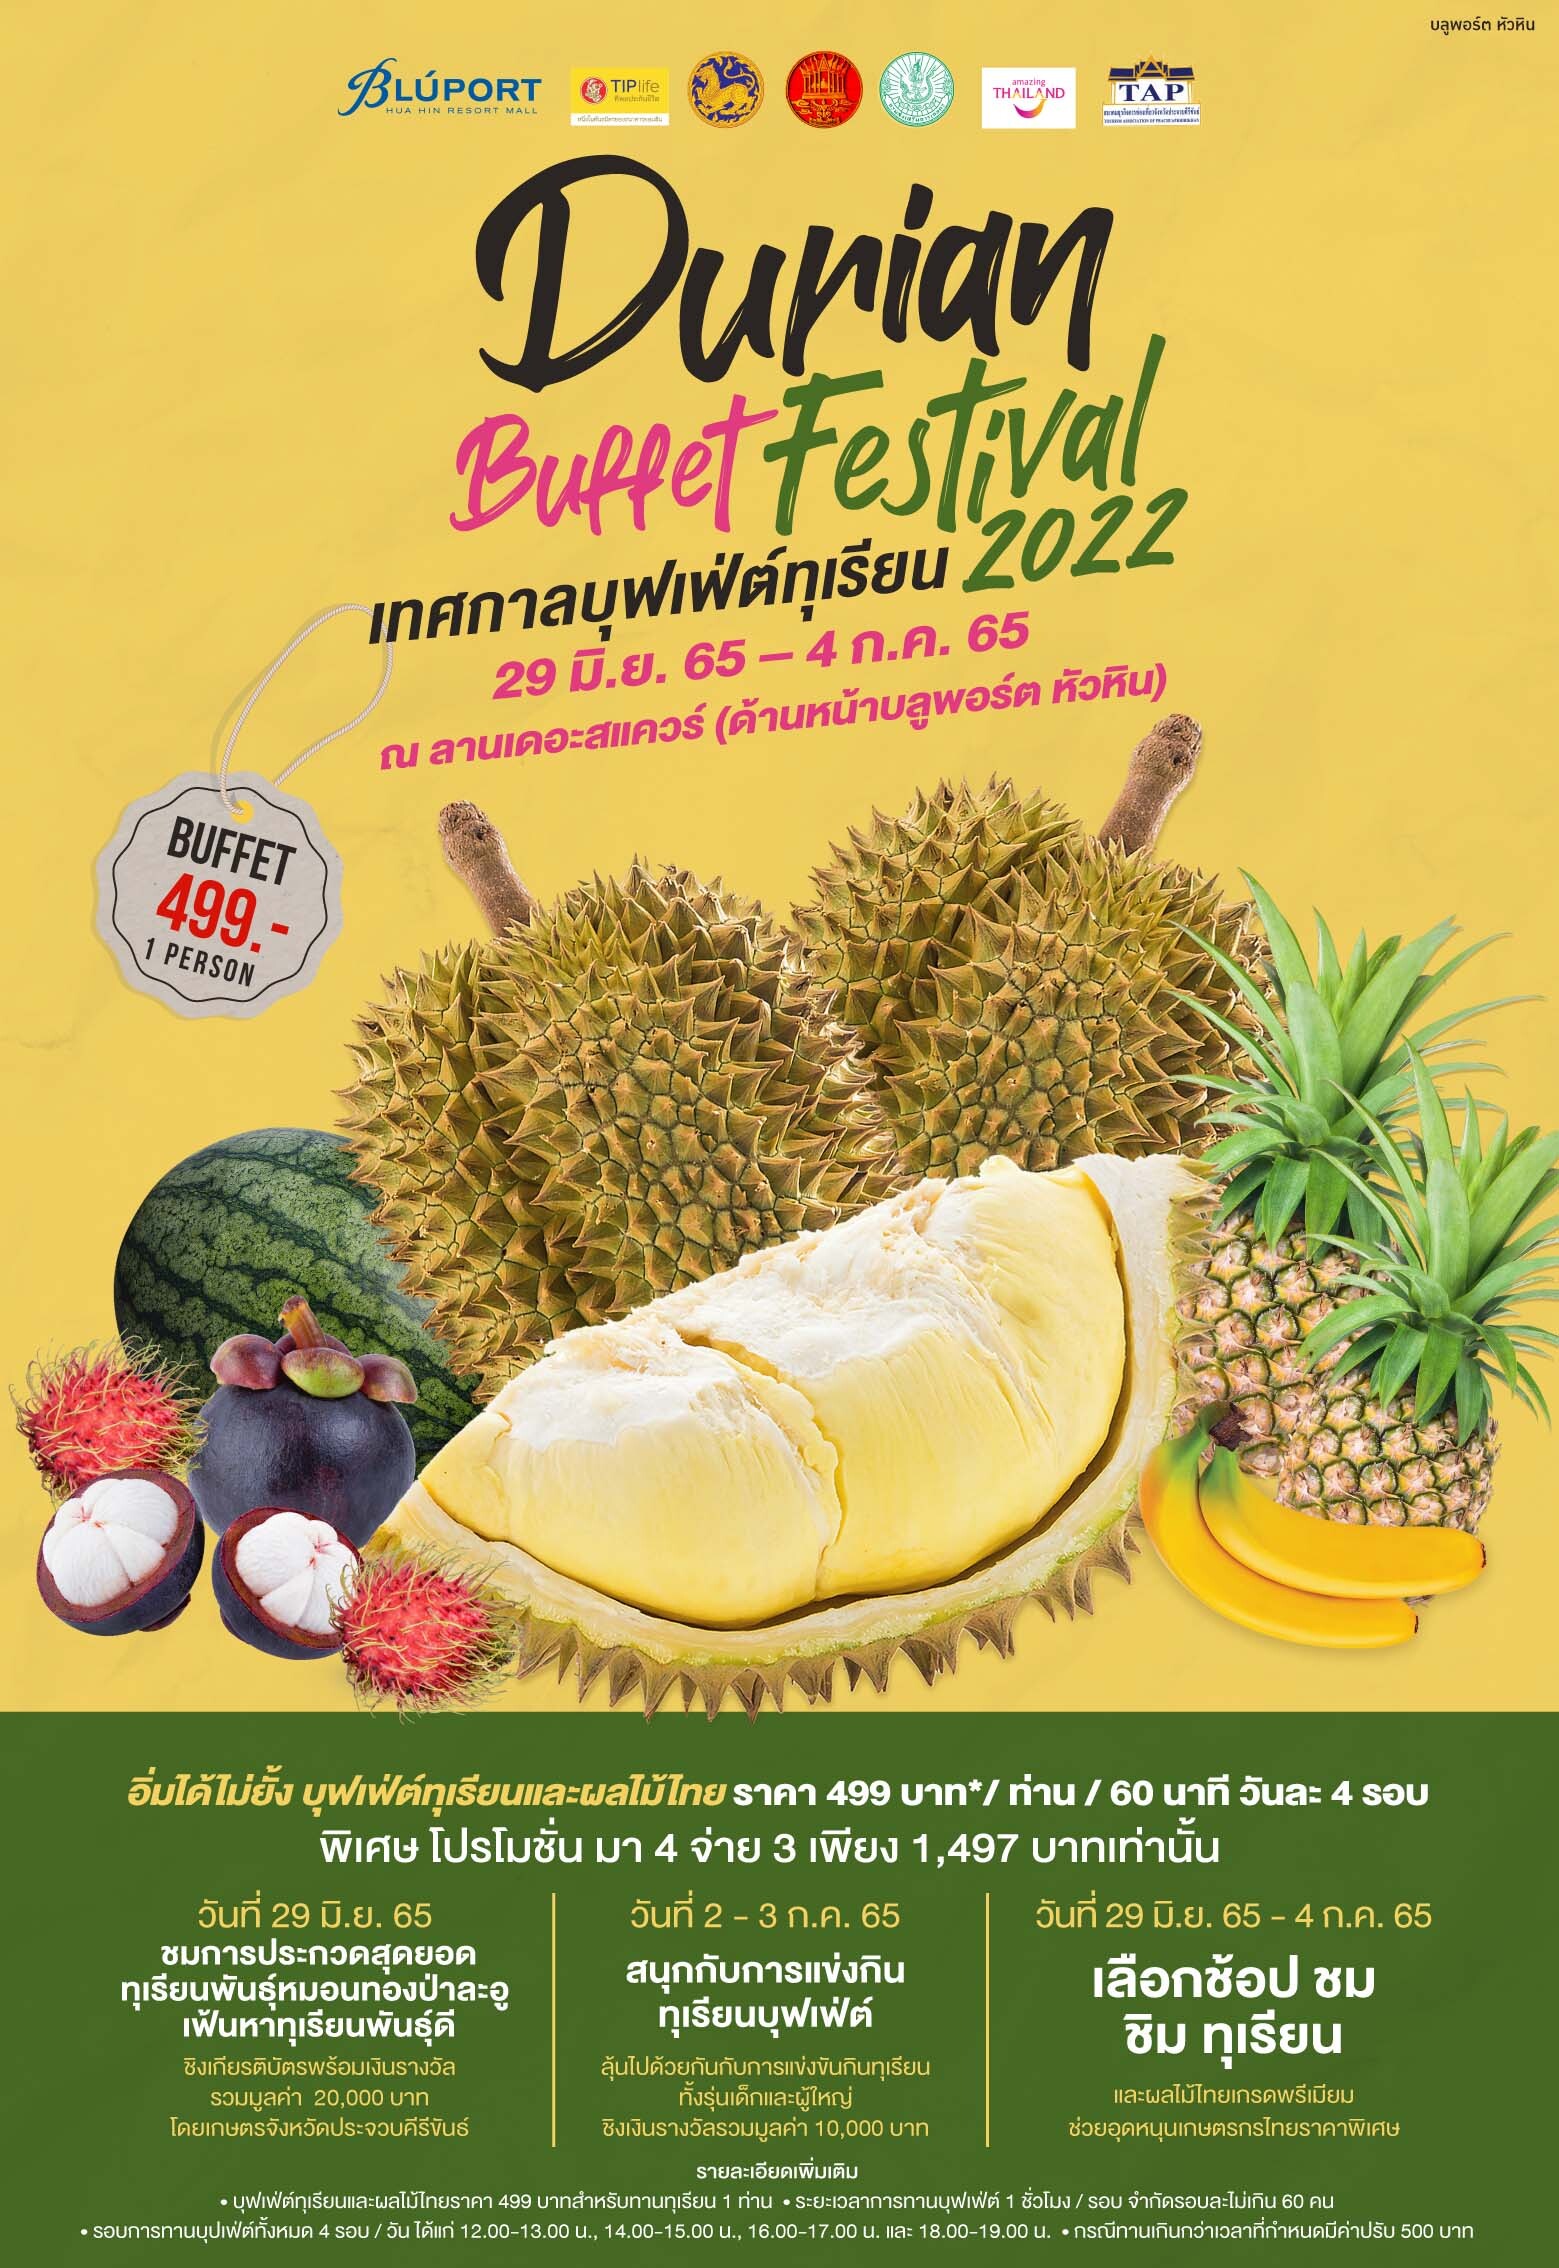 บลูพอร์ต หัวหิน ปลุกกระแสทุเรียนฟีเวอร์ พร้อมสนับสนุนเกษตรกรชุมชน สร้างความแข็งแรงของสายพันธุ์ทุเรียนในท้องถิ่น จัดงาน Durian Buffet Festival 2022